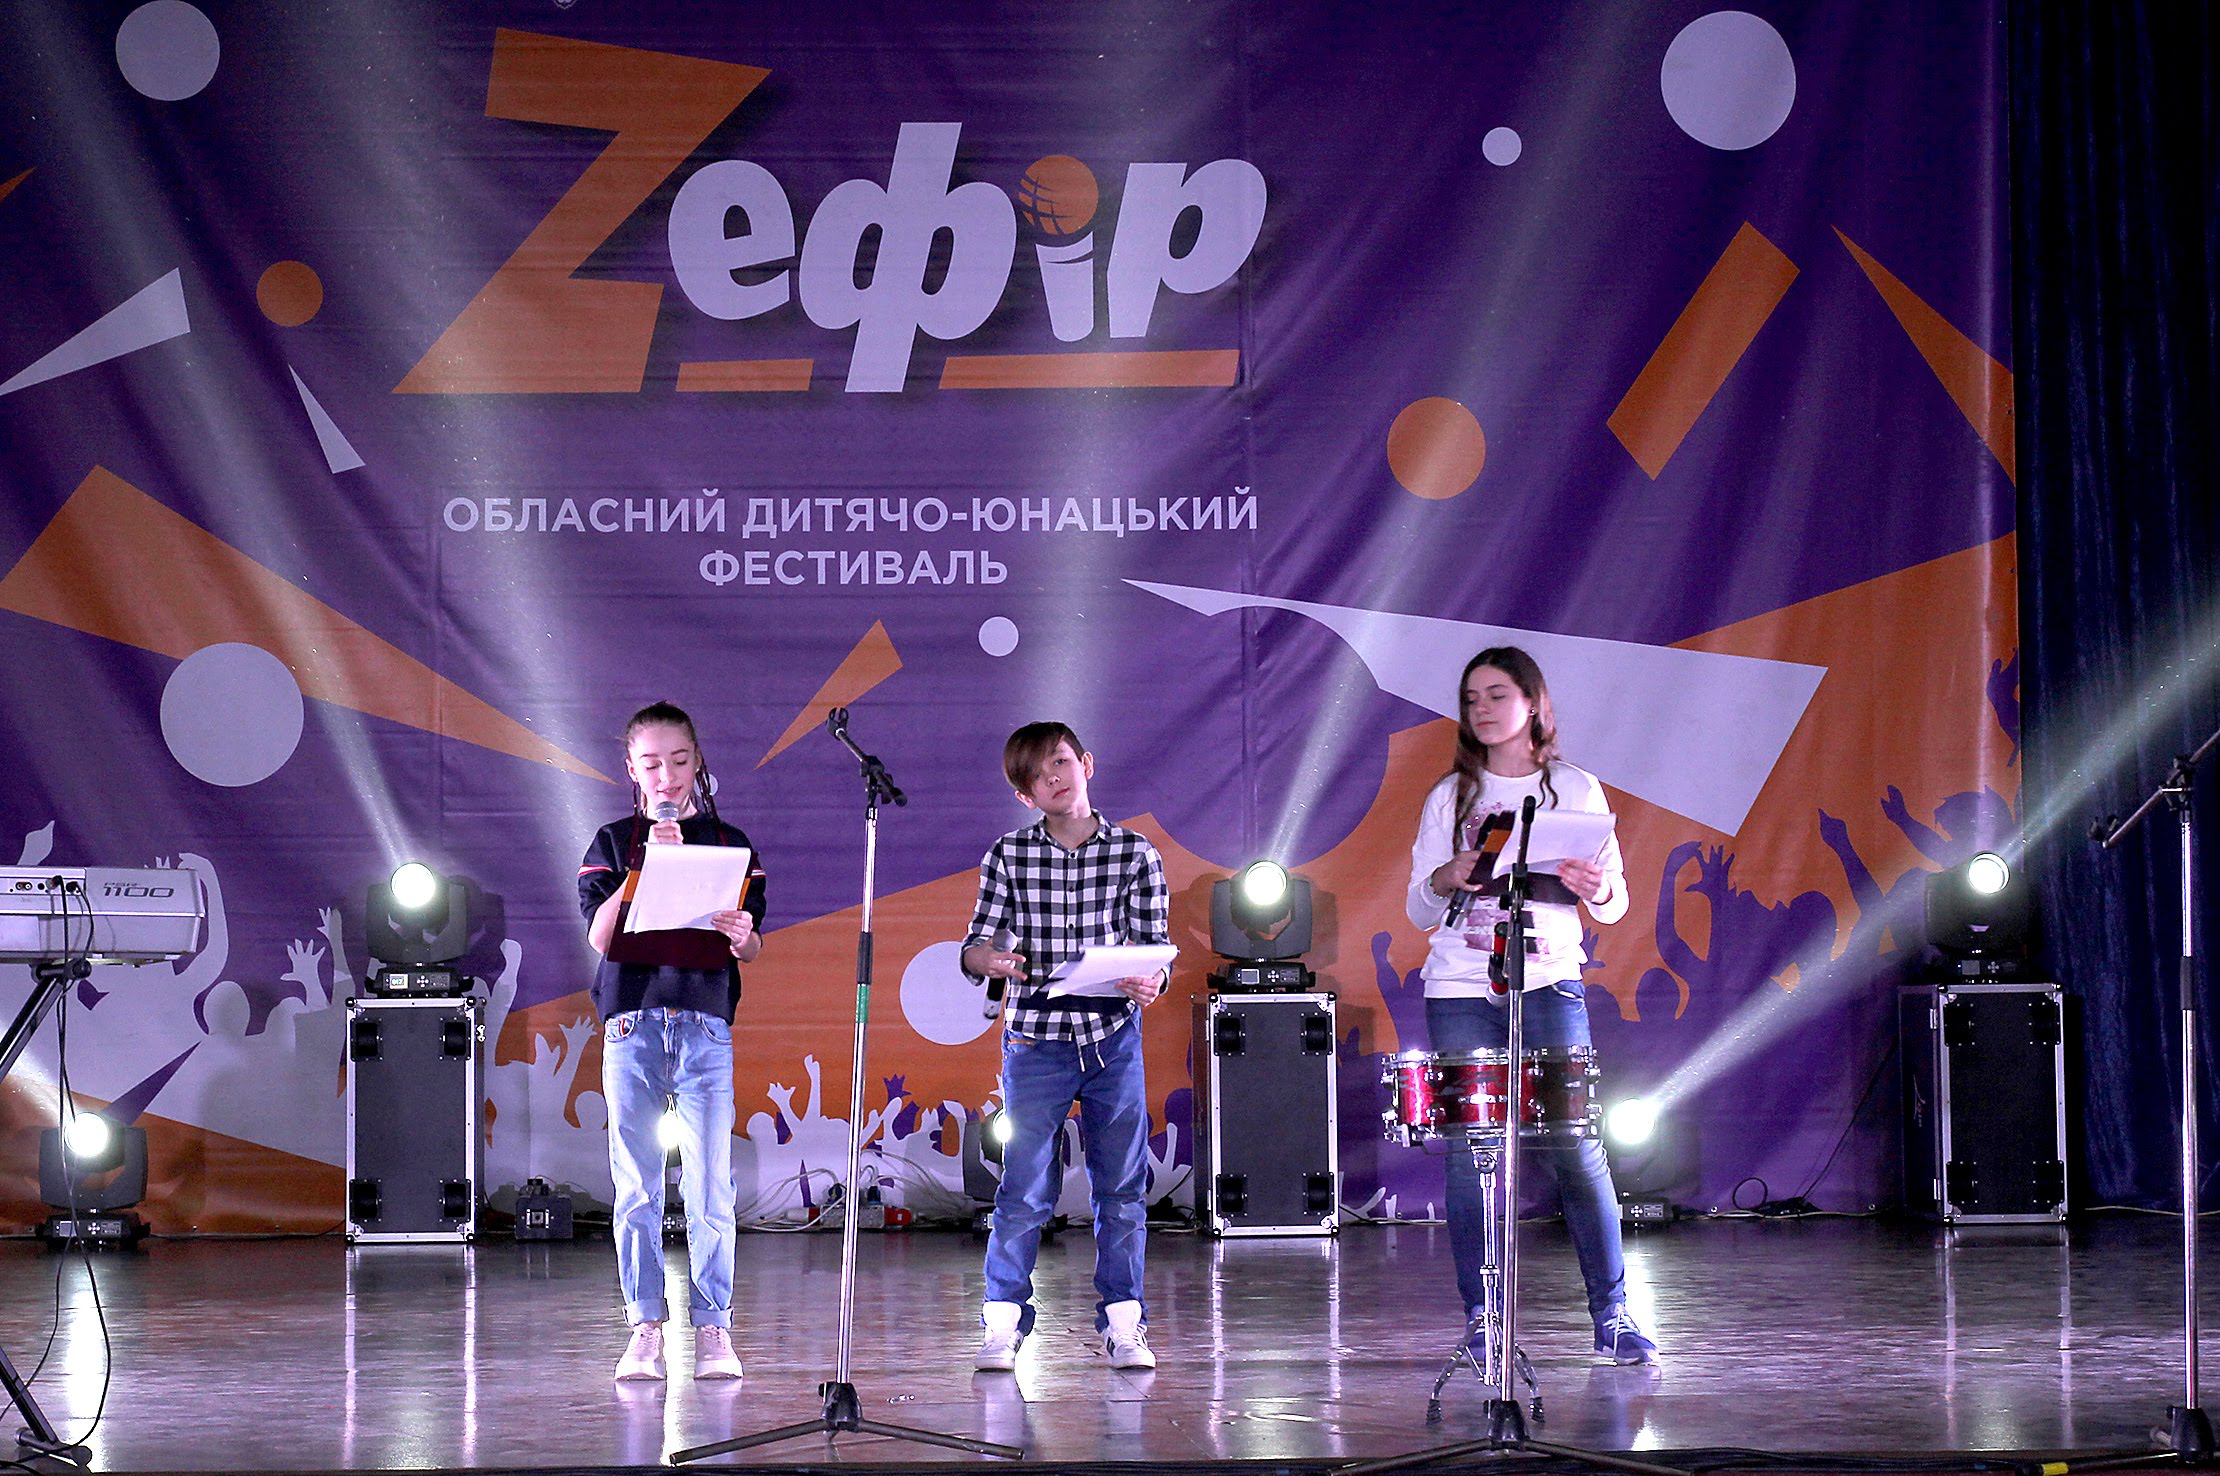  У Новомосковську пройшов відбірковий тур талант-фесту «Z_ефір»